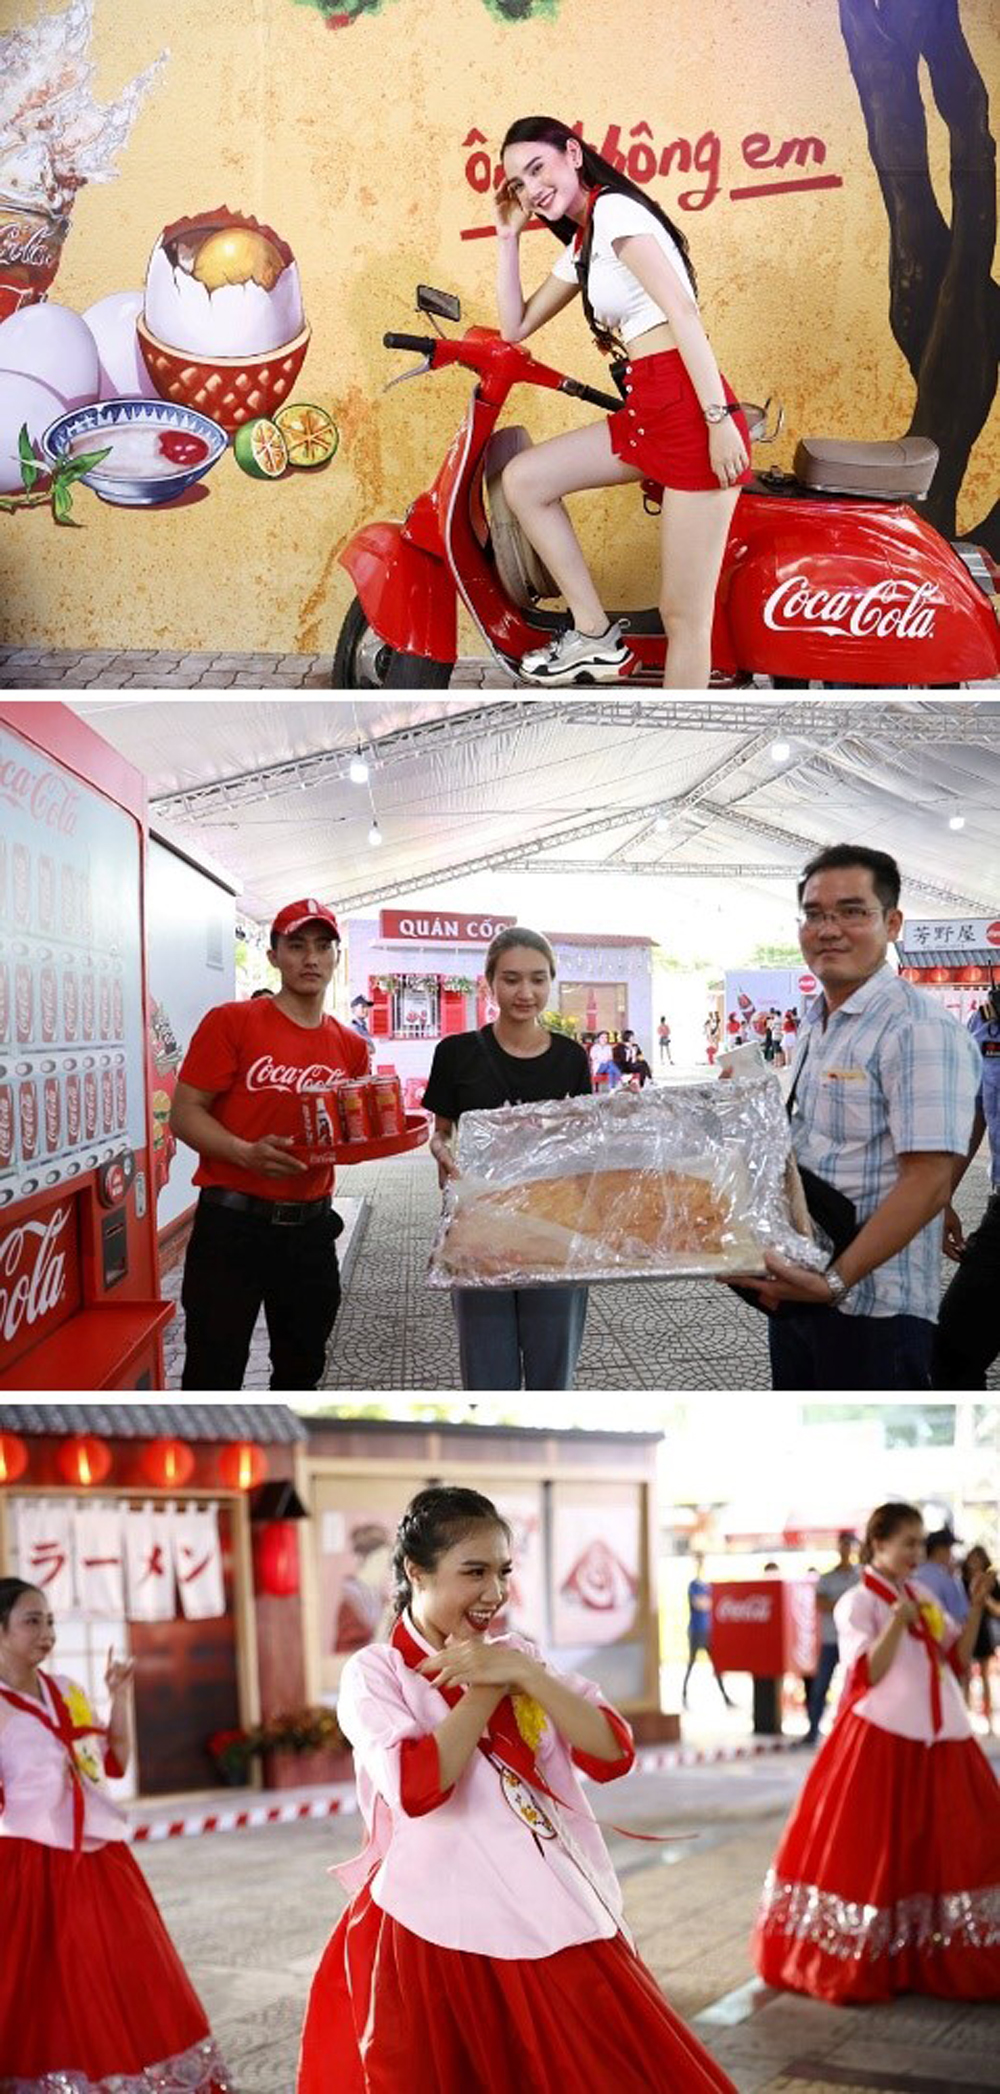 Check-in ở những góc ảnh siêu độc đáo, chơi máy Coca-Cola thần kỳ và xem những màn biểu diễn đậm chất Thái - Hàn - Việt - Nhật